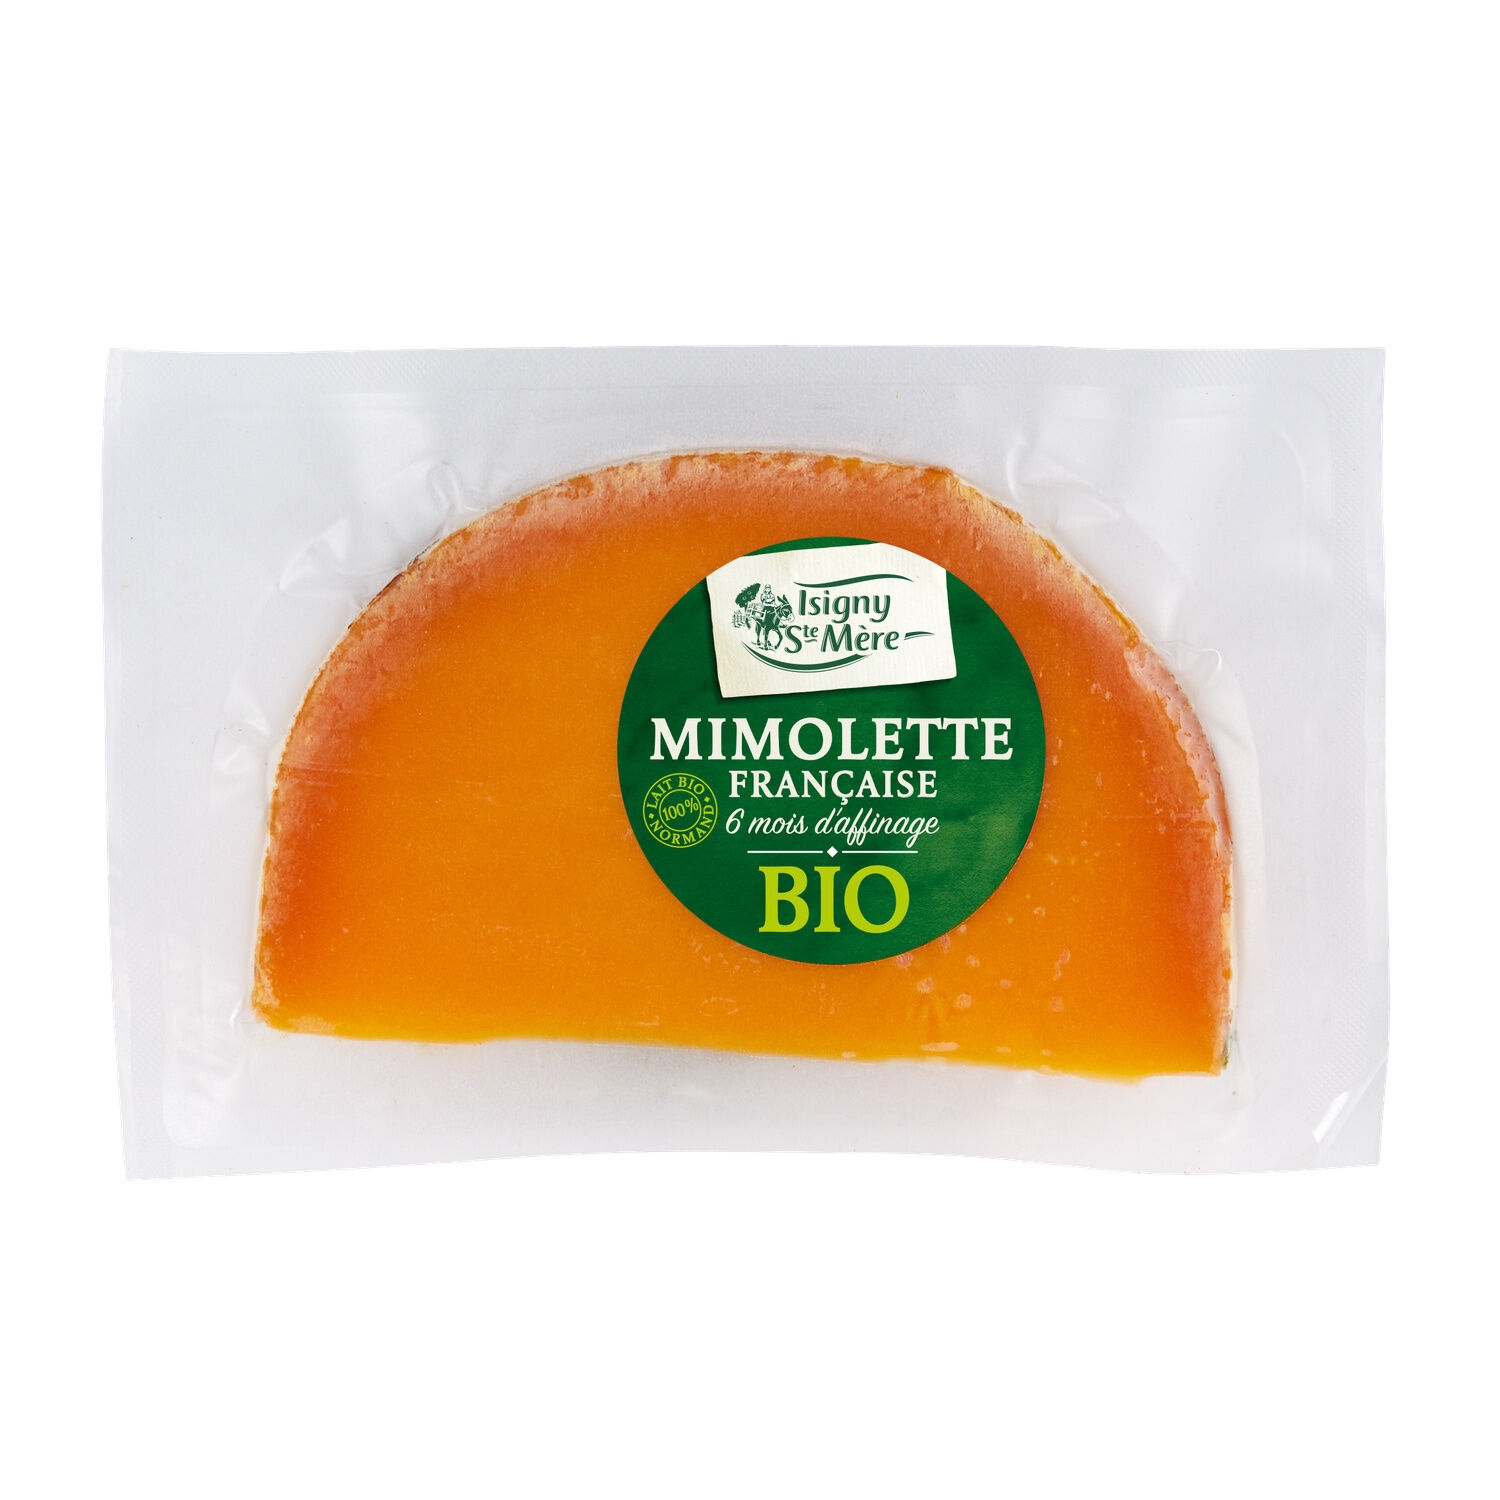 Mimolette 6 Mois Daffinage Bio Isigny Sainte Mere Le Fromage De 200g à Prix Carrefour 